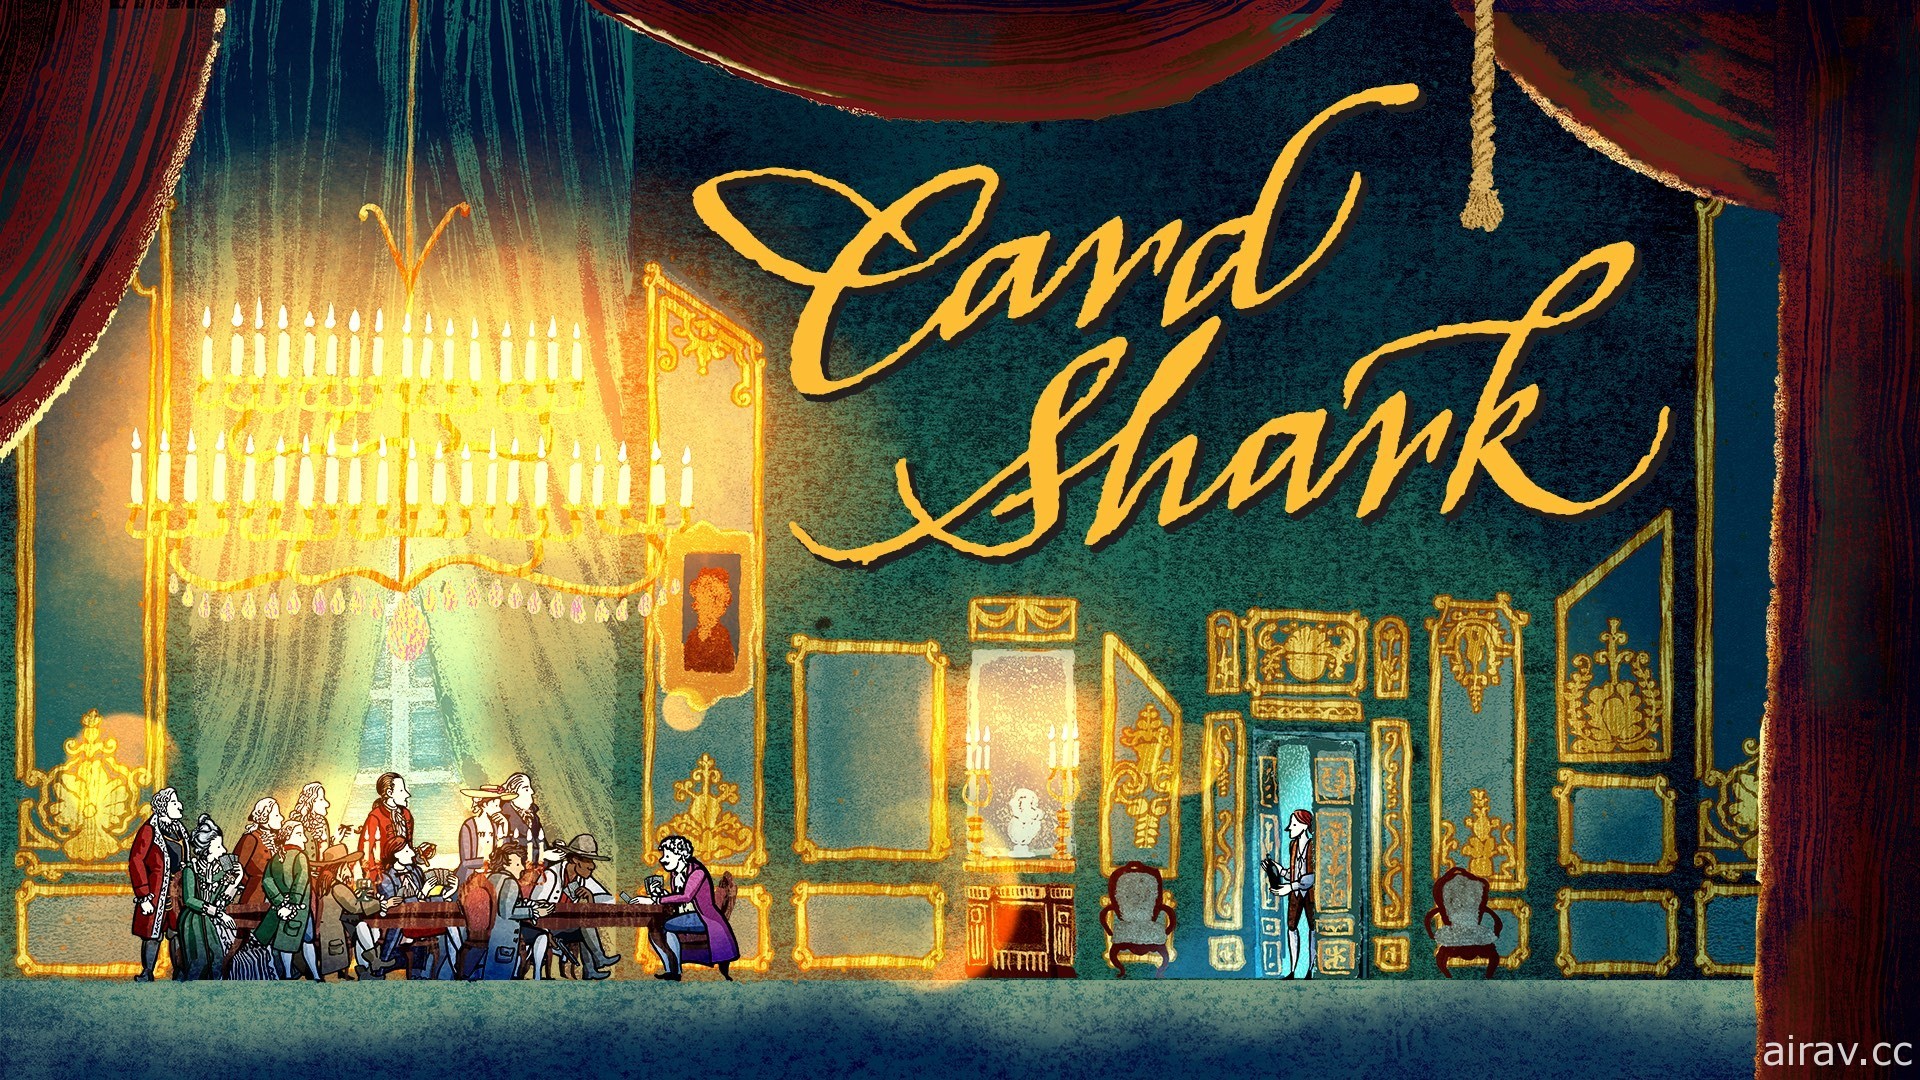 《王权 Reigns》团队新作《王牌卡神 Card Shark》即将发行 展开中世纪欧洲冒险赌局